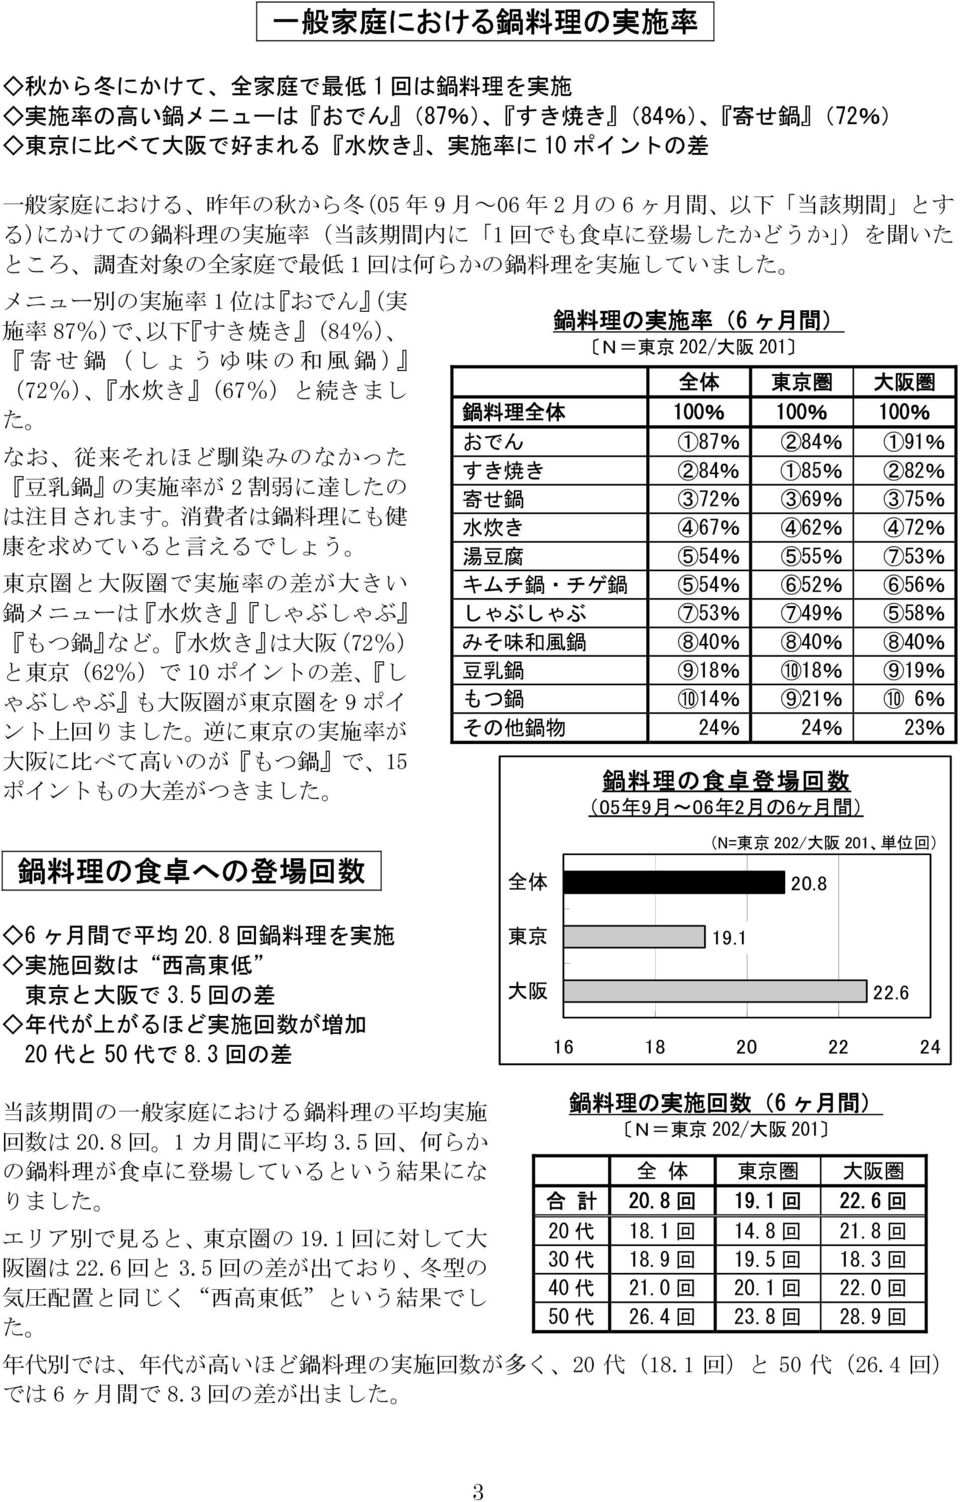 施 率 87%)で 以 下 すき 焼 き (84%) 寄 せ 鍋 (しょうゆ 味 の 和 風 鍋 ) (72%) 水 炊 き (67%)と 続 きまし た なお 従 来 それほど 馴 染 みのなかった 豆 乳 鍋 の 実 施 率 が 2 割 弱 に 達 したの は 注 目 されます 消 費 者 は 鍋 料 理 にも 健 康 を 求 めていると 言 えるでしょう 東 京 圏 と 大 阪 圏 で 実